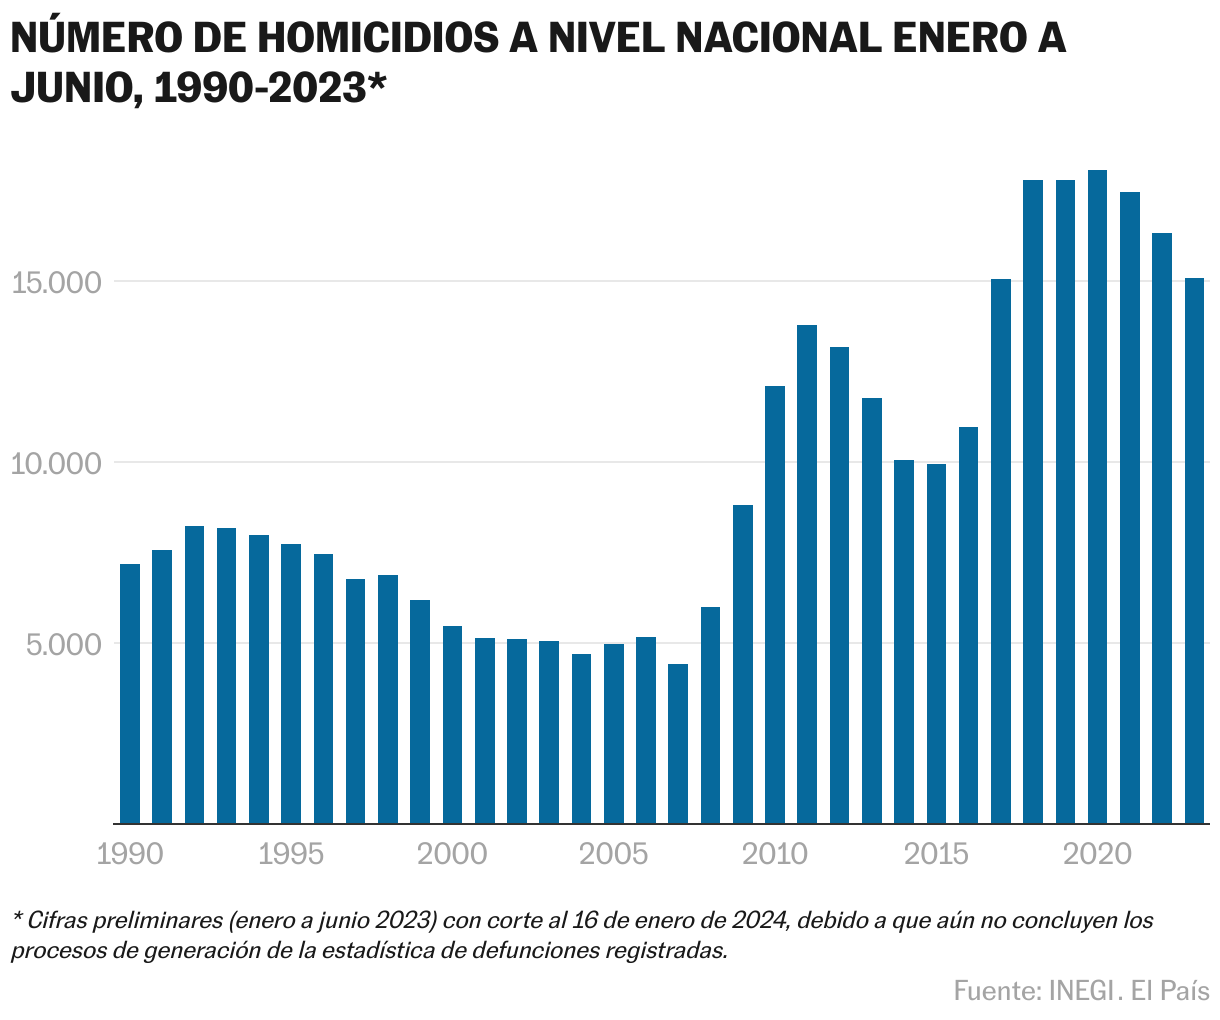 Número de homicidios a nivel nacional de enero a junio, 1990-2023 proporcionado por el INEGI